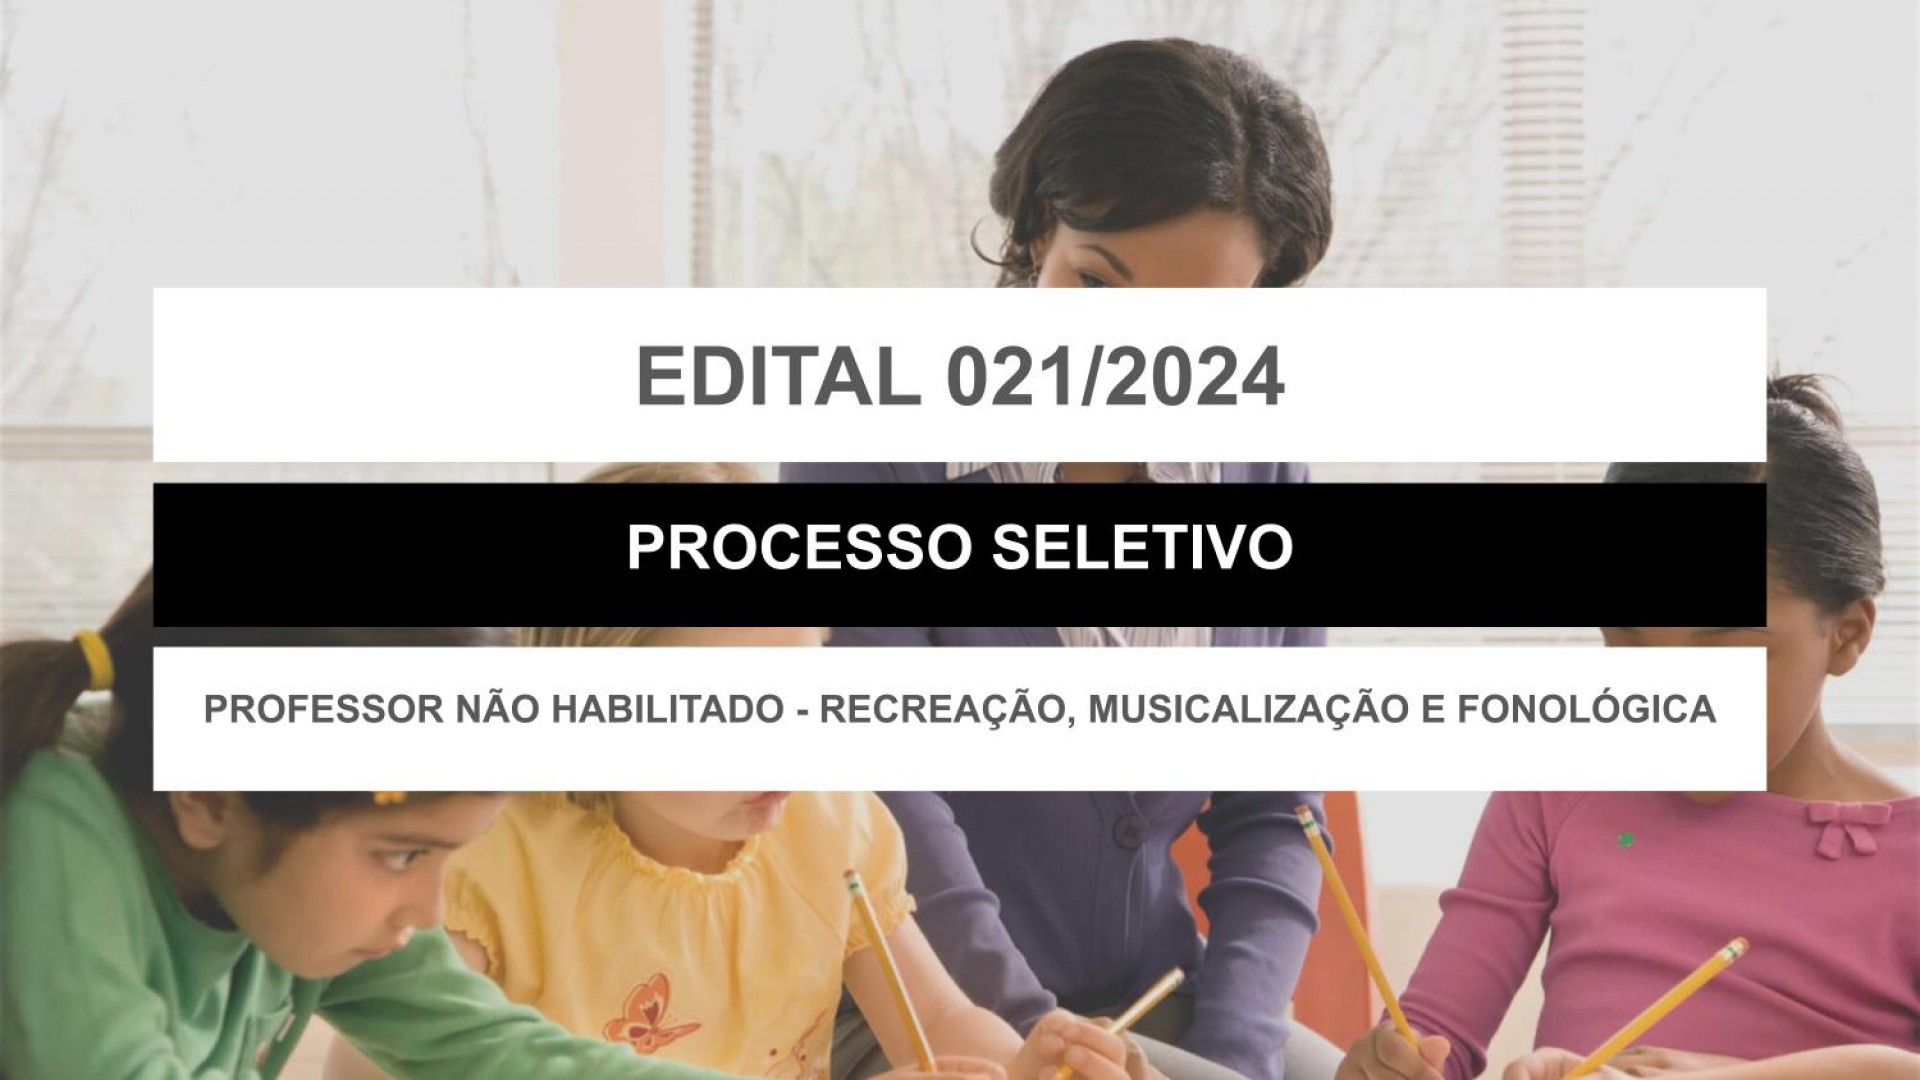 EDITAL EDUCAÇÃO Nº 021/2024 - PROFESSOR NÃO HABILITADOS - RECREAÇÃO, MUSICALIZAÇÃO E FONOLÓGICA